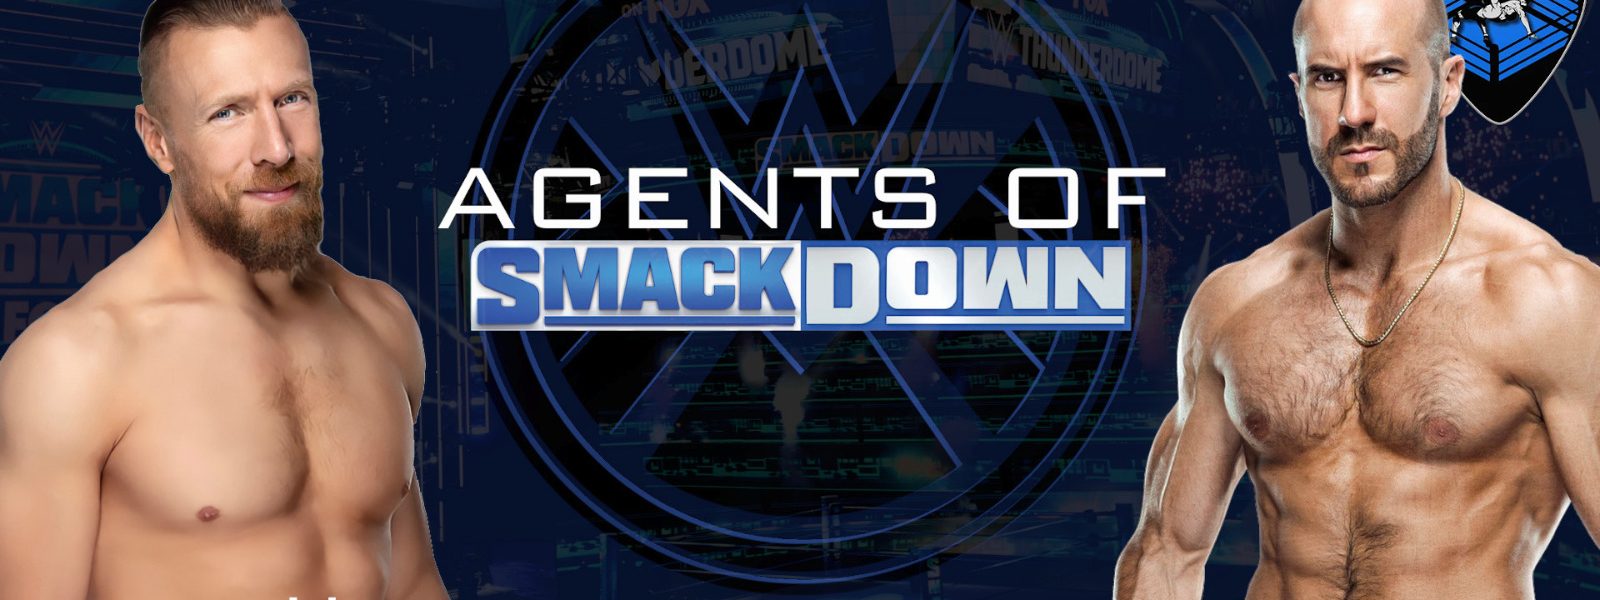 Una nuova alleanza in vista - Agents Of Smackdown EP.3